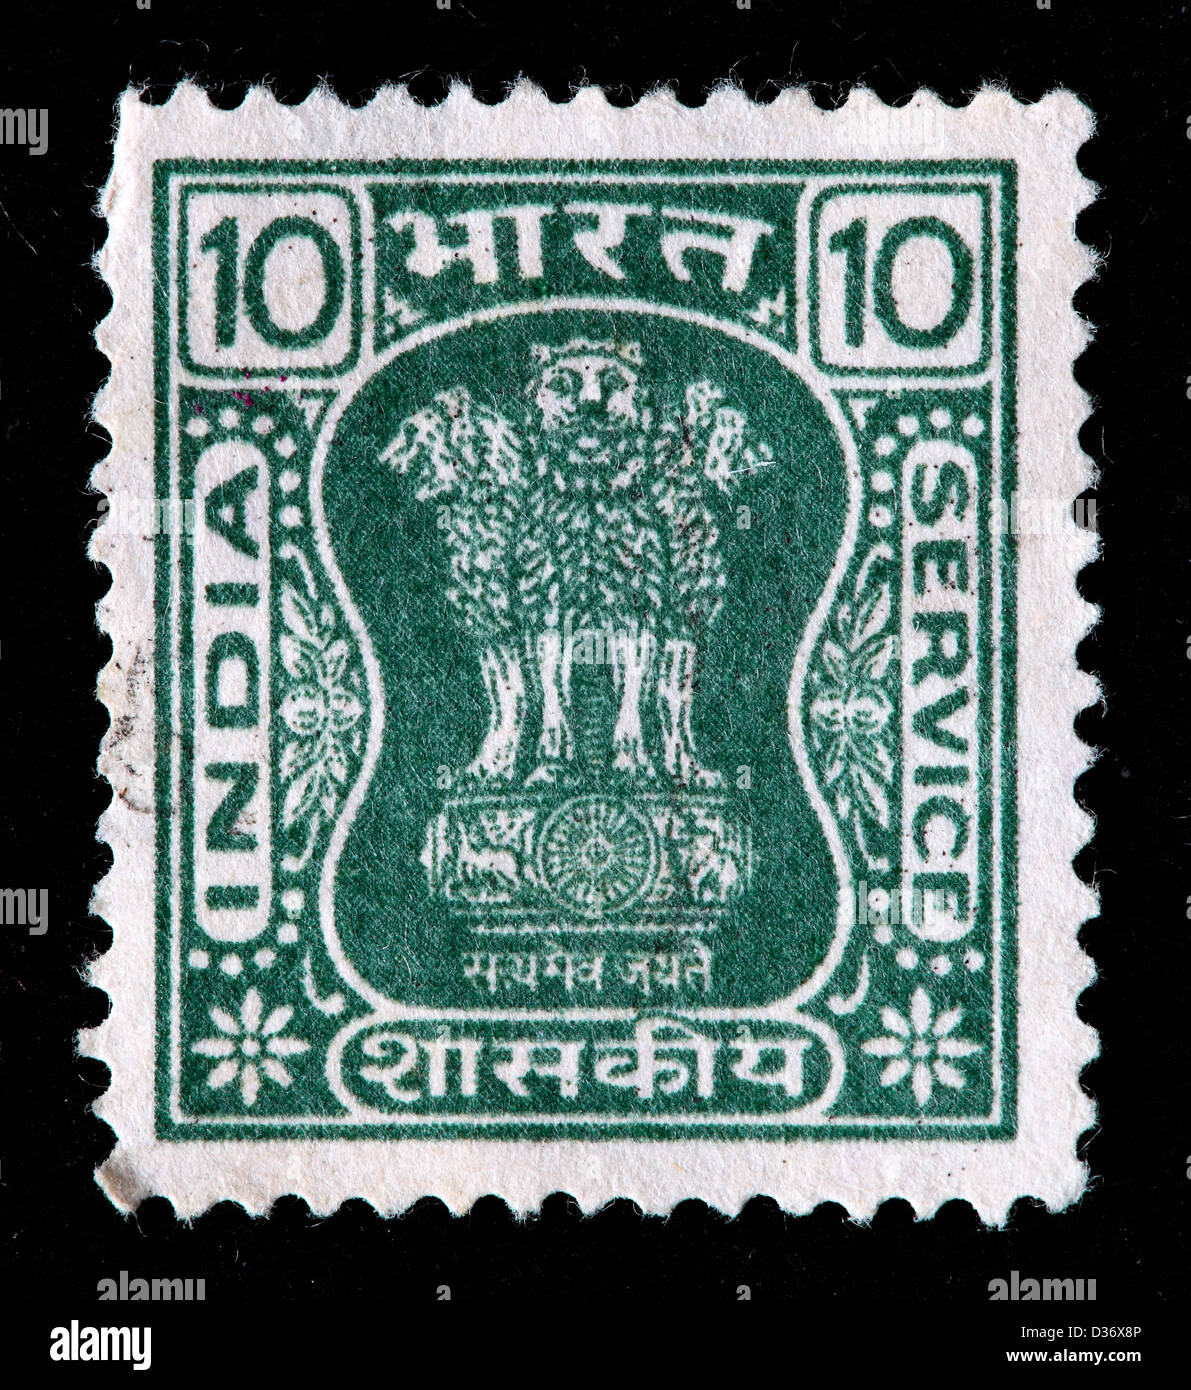 Capitale del pilastro Asoka, francobollo, India, 1967 Foto Stock